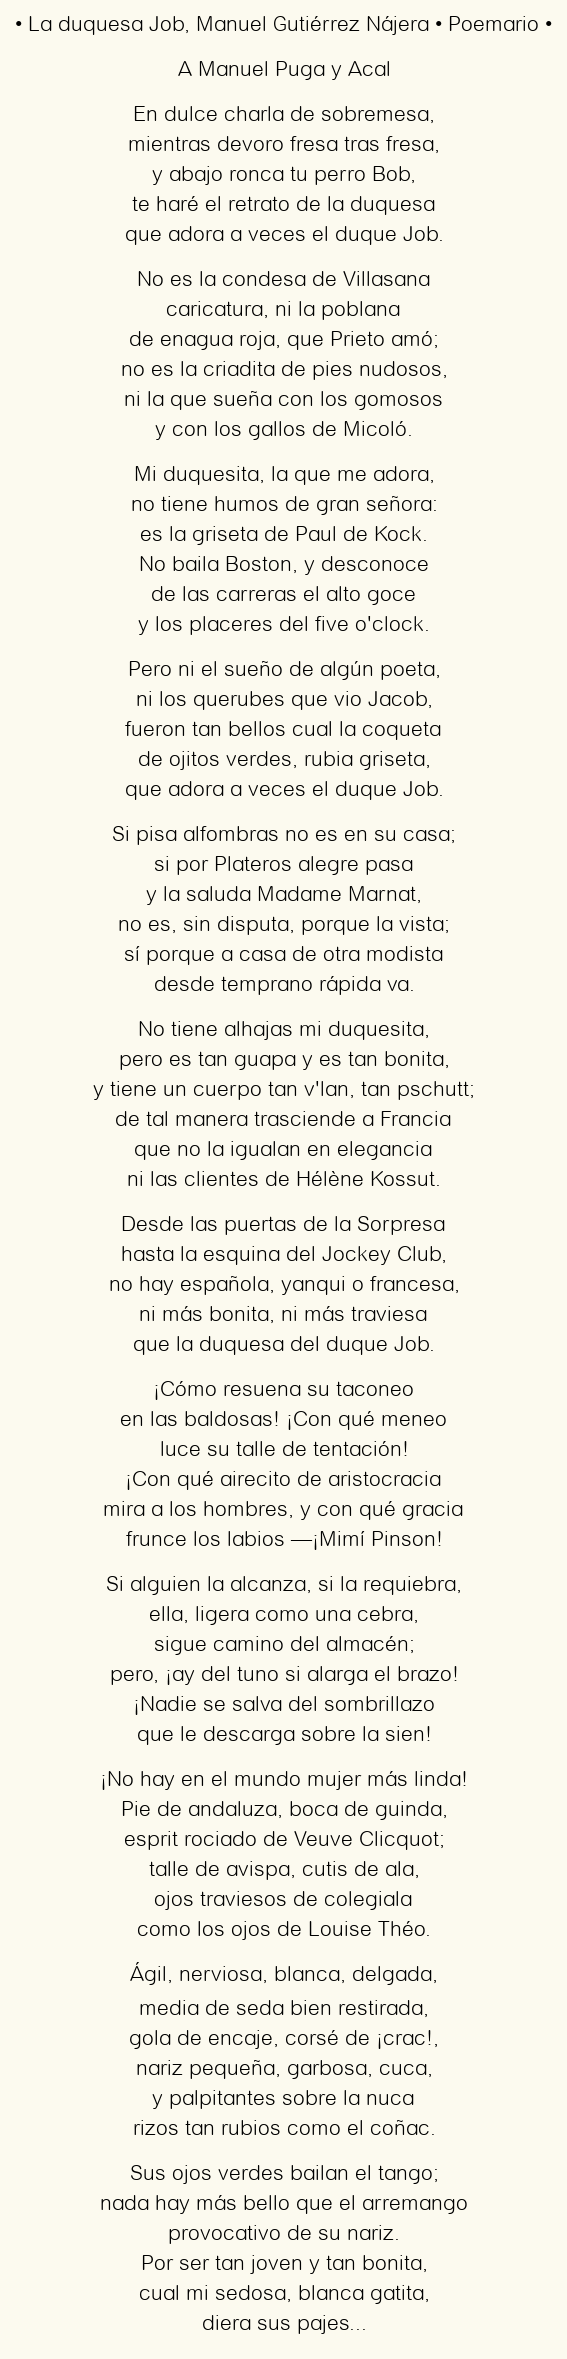 Imagen con el poema La duquesa Job, por Manuel Gutiérrez Nájera